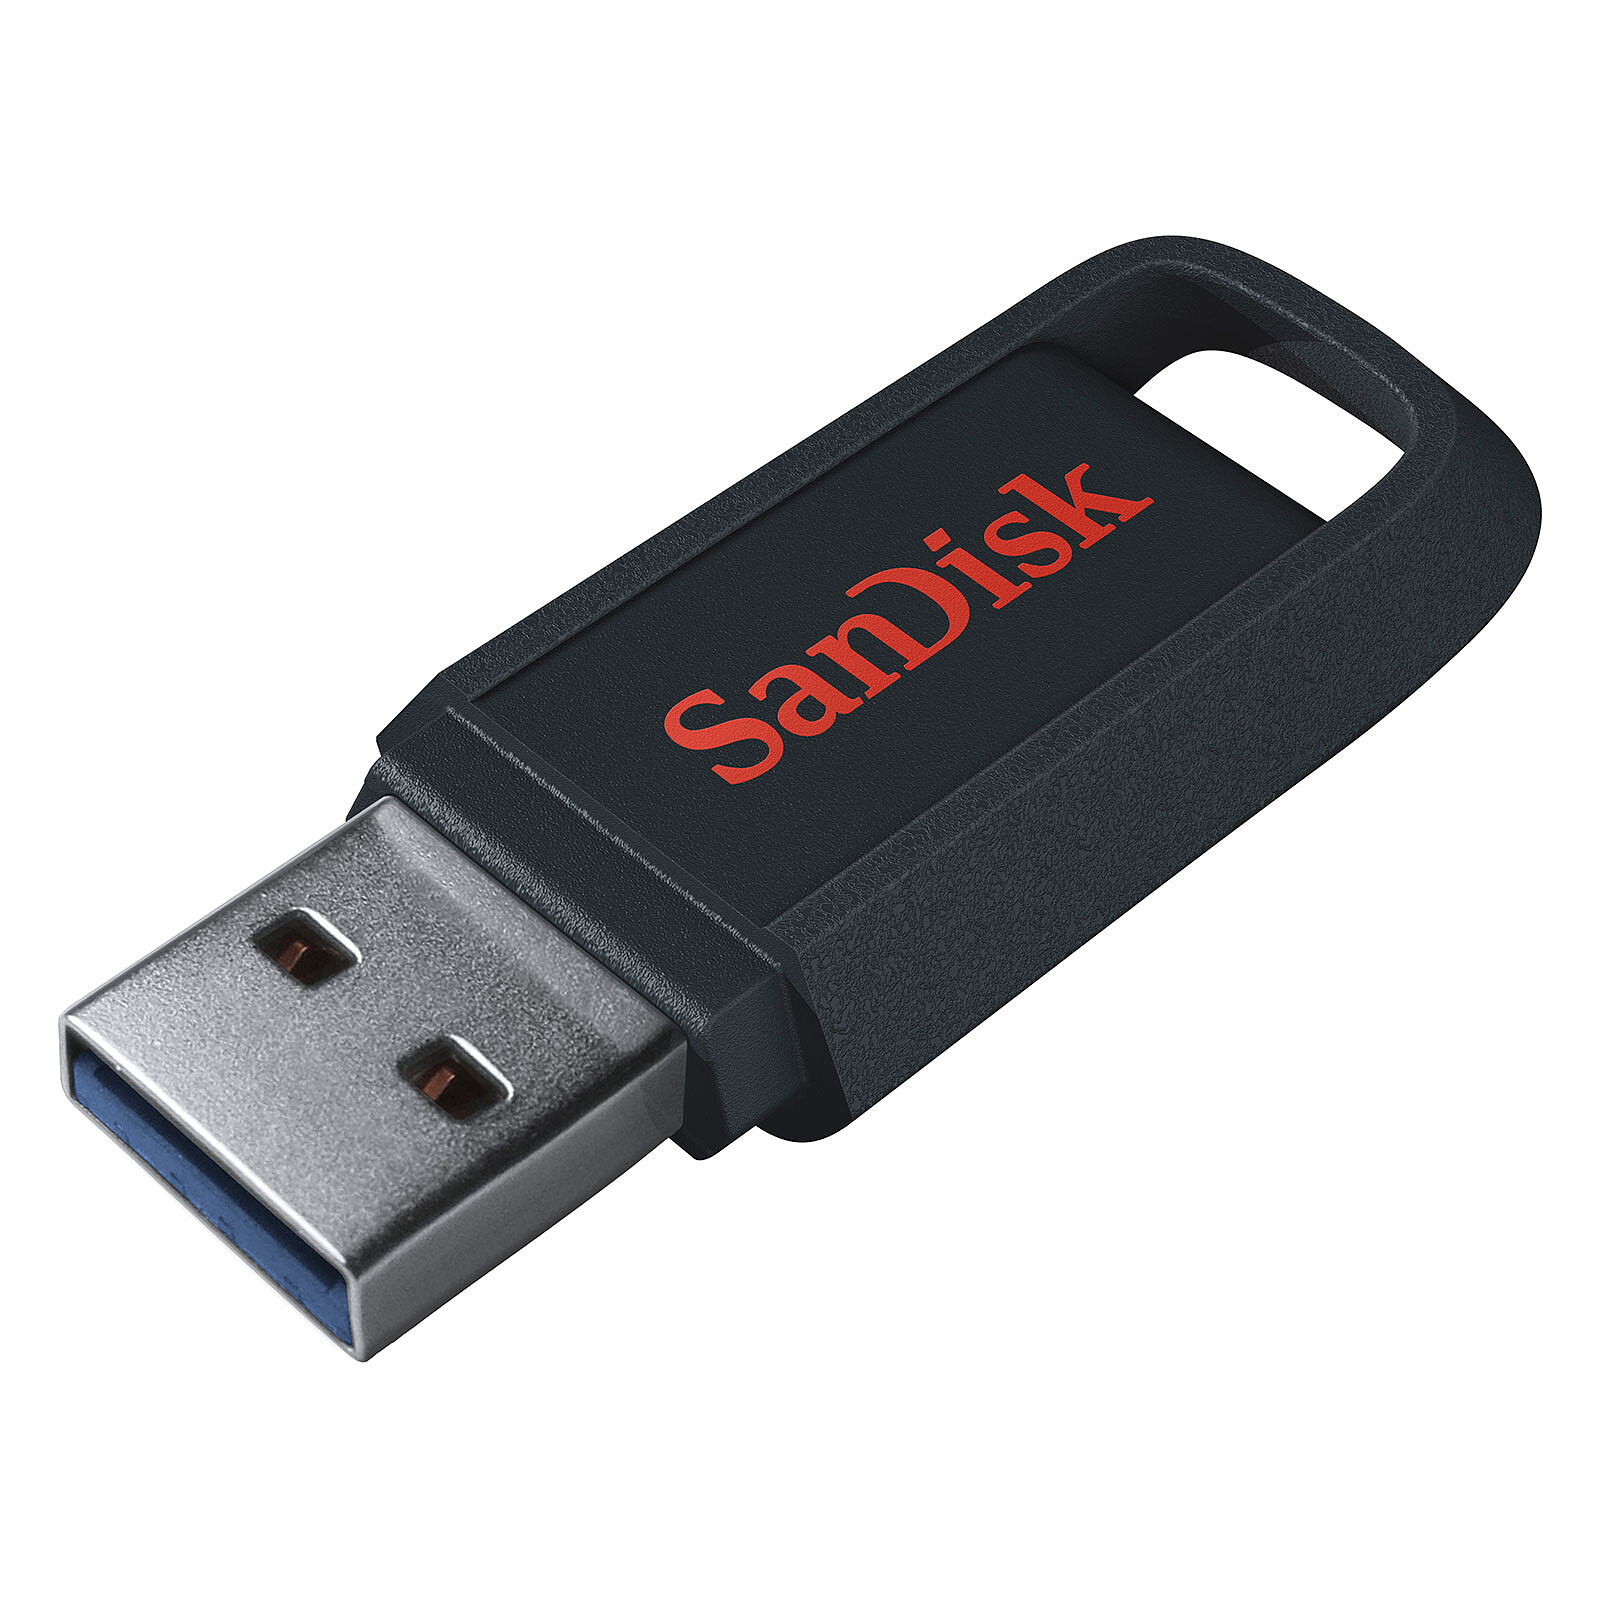 Нижний купить флешку. Флешка SANDISK 64 GB USB 3.0. USB флешка 64 GB SANDISK. Флеш накопитель 64gb SANDISK. SANDISK 128gb USB 3.